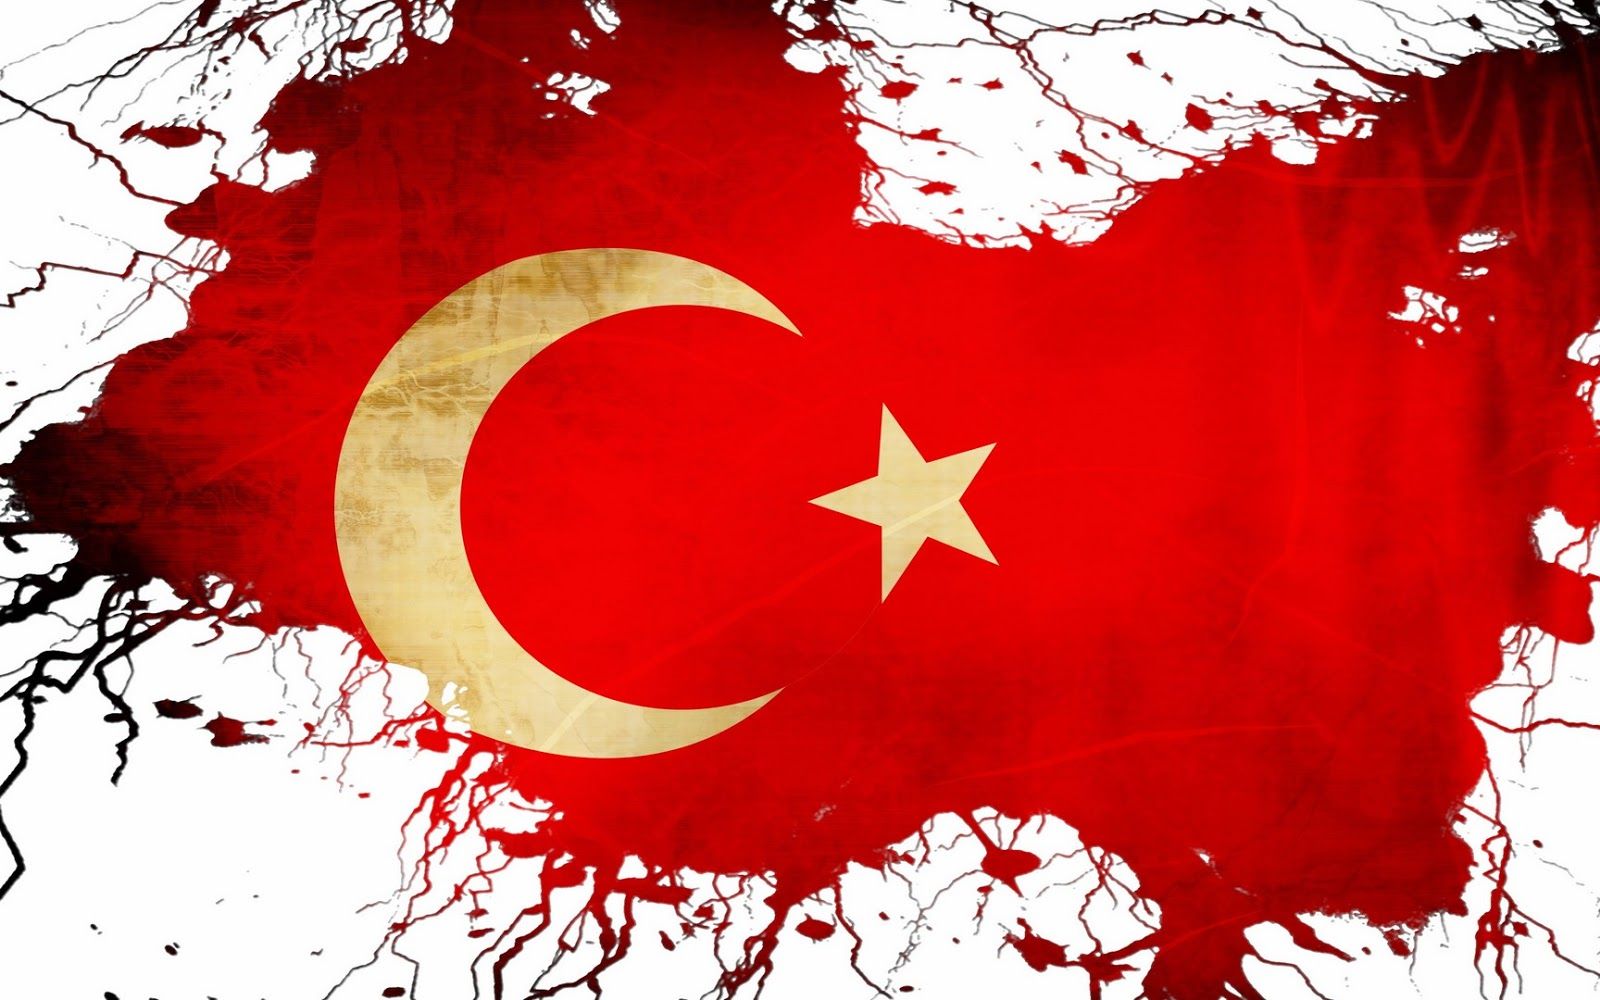 Beyaz turk bayragi resimleri 9